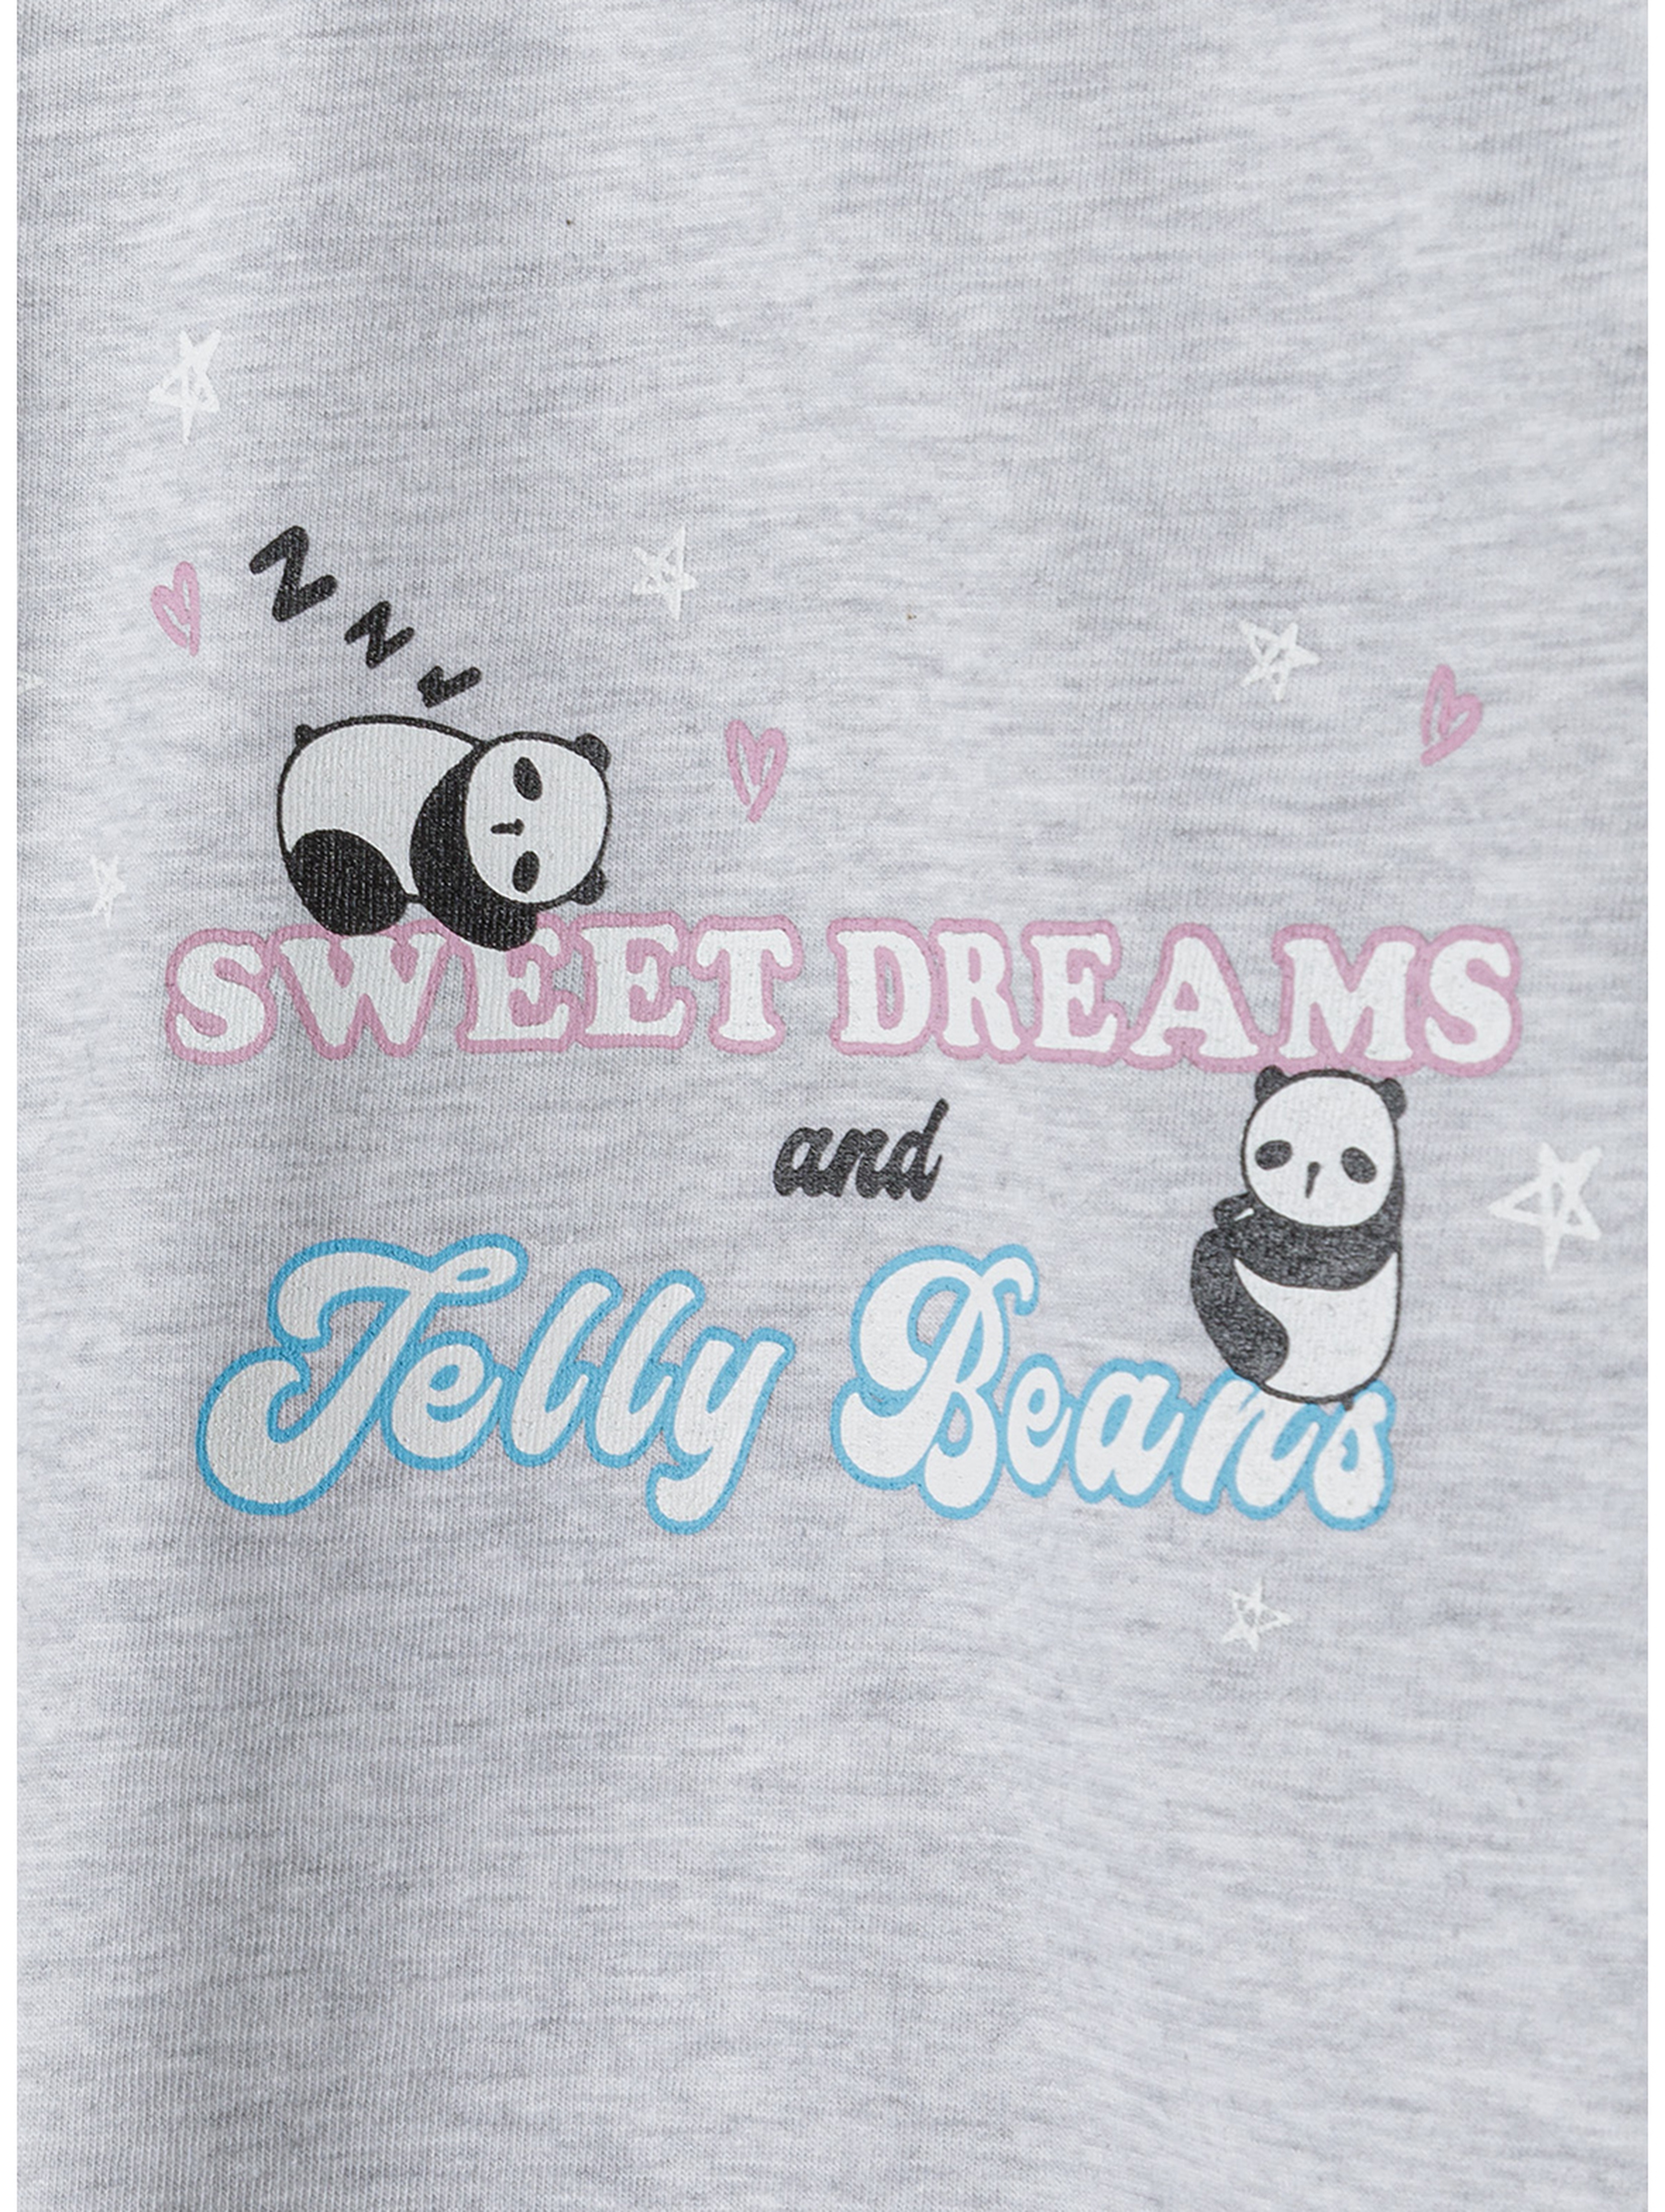 2-pack piżam z długim rękawem oraz nadrukiem w pandy dla dziewczynki